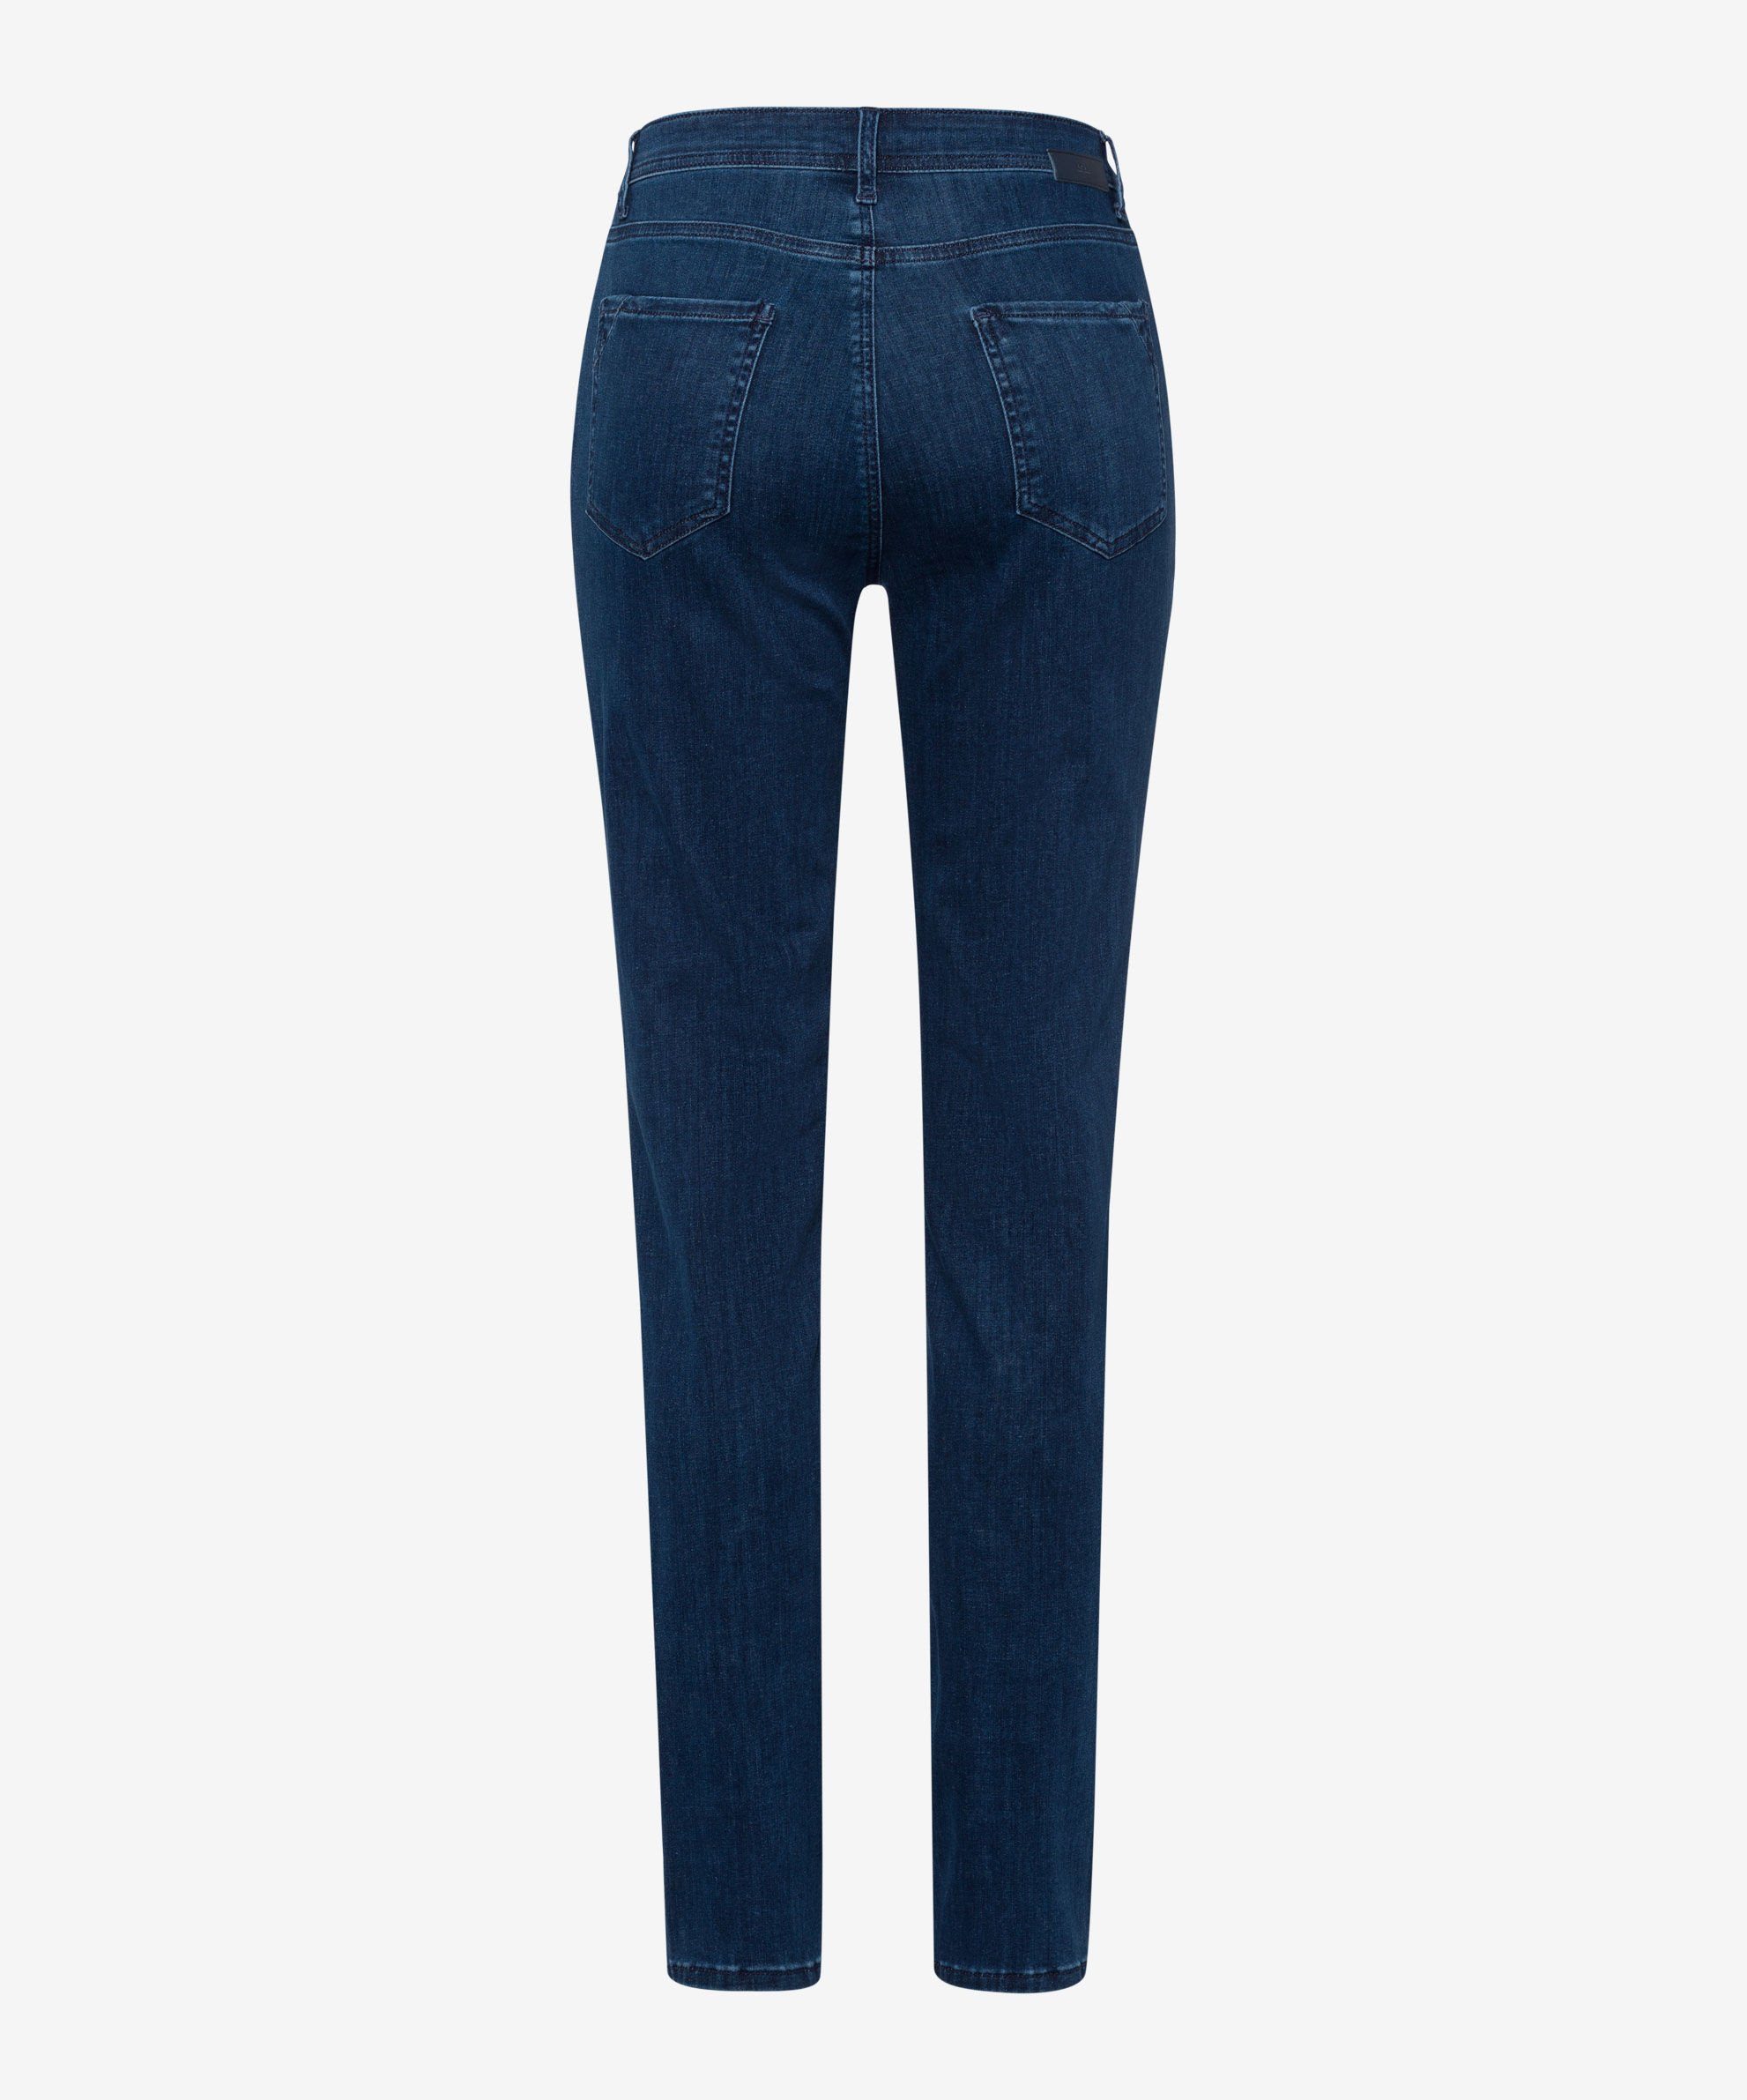 blue regular Five-Pocket-Jeans used Brax Regular-fit-Jeans